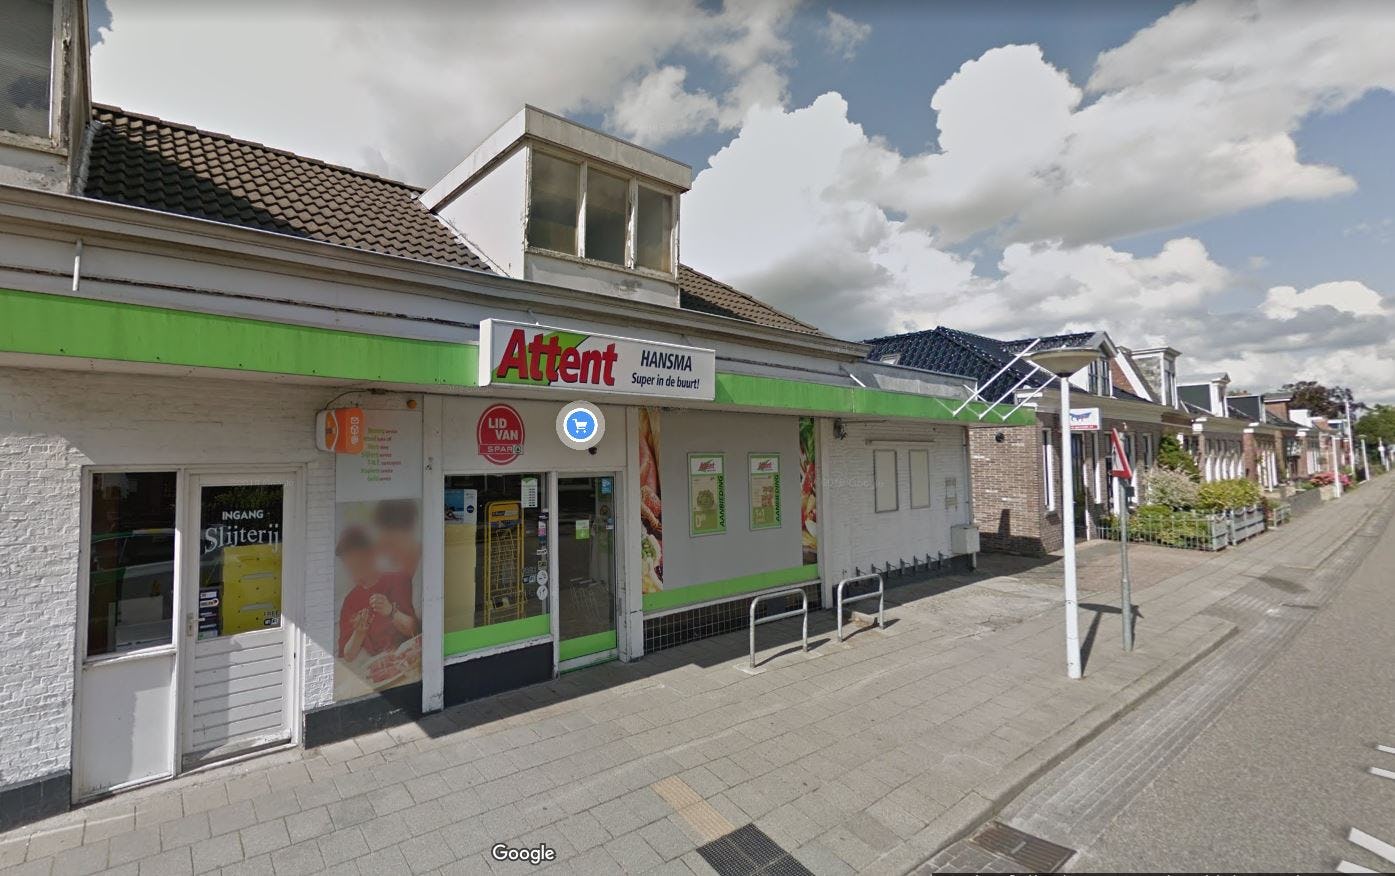 De Attent in Wergea is overgenomen en omgebouwd tot neutrale Spar-winkel. Bron: Google Streetview, 11 mei 2021